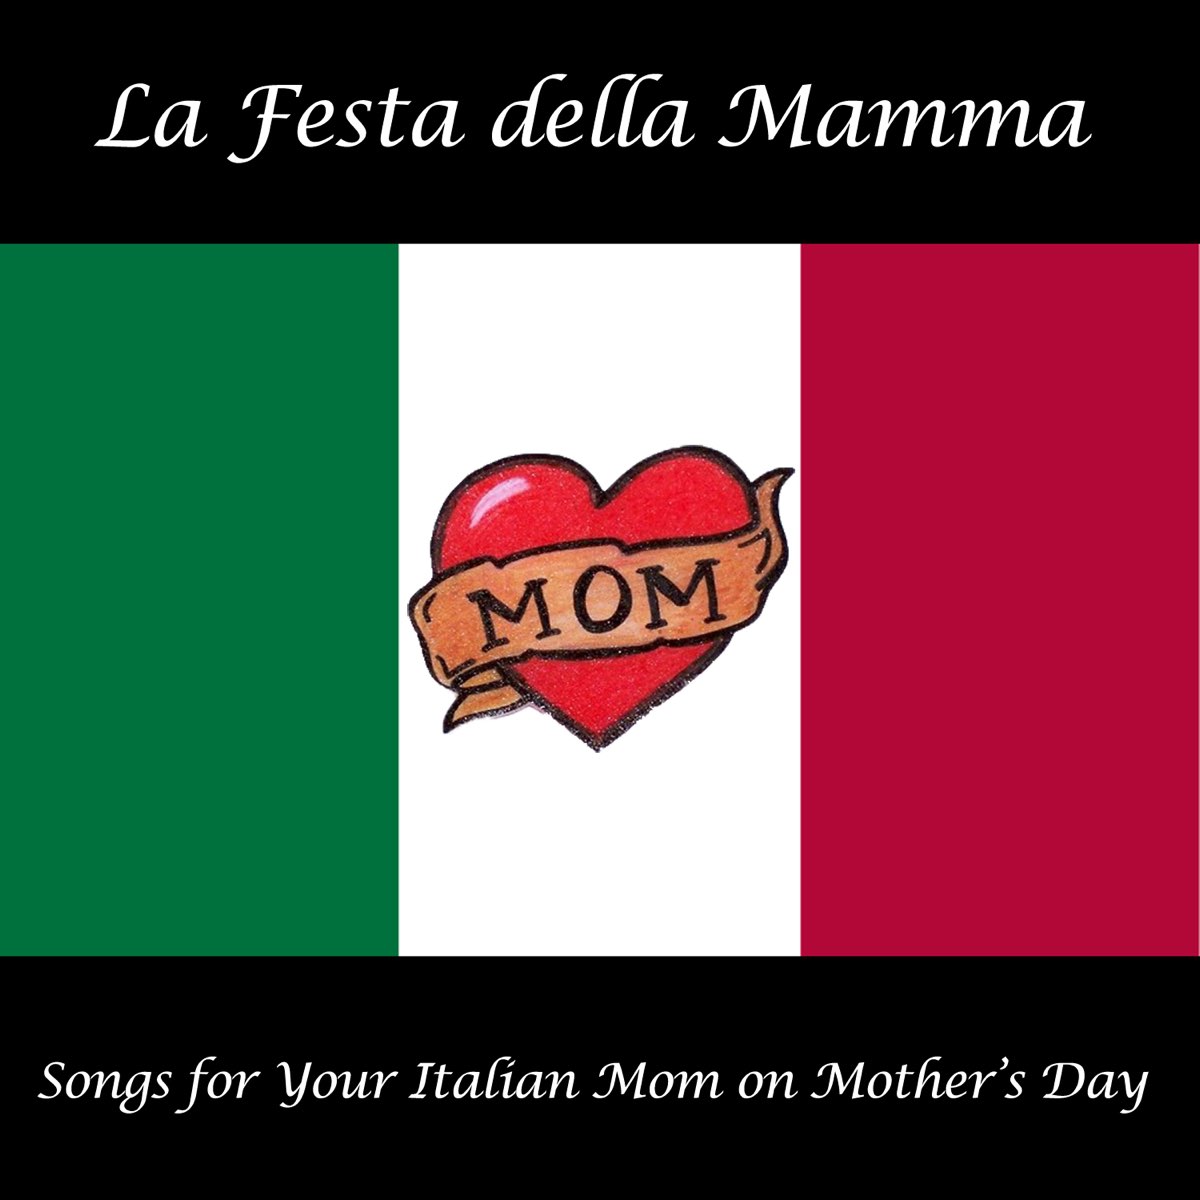 Italiano mom